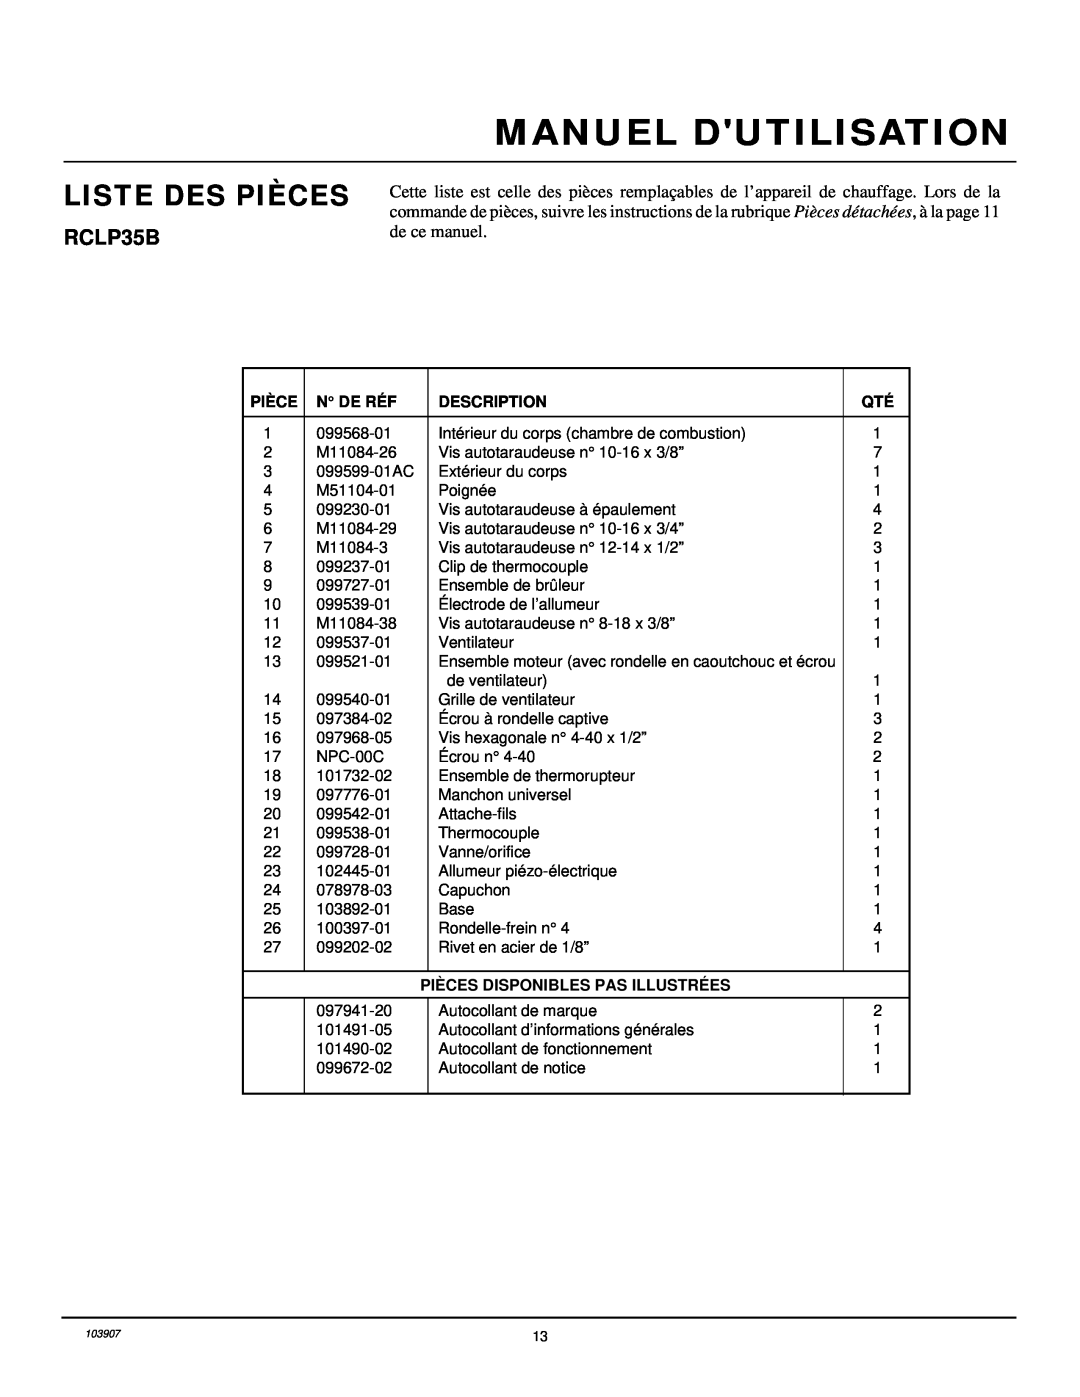 Desa RCLP35B Liste Des Pièces, Manuel Dutilisation, N De Ré F, Description, Piè Ces Disponibles Pas Illustré Es 